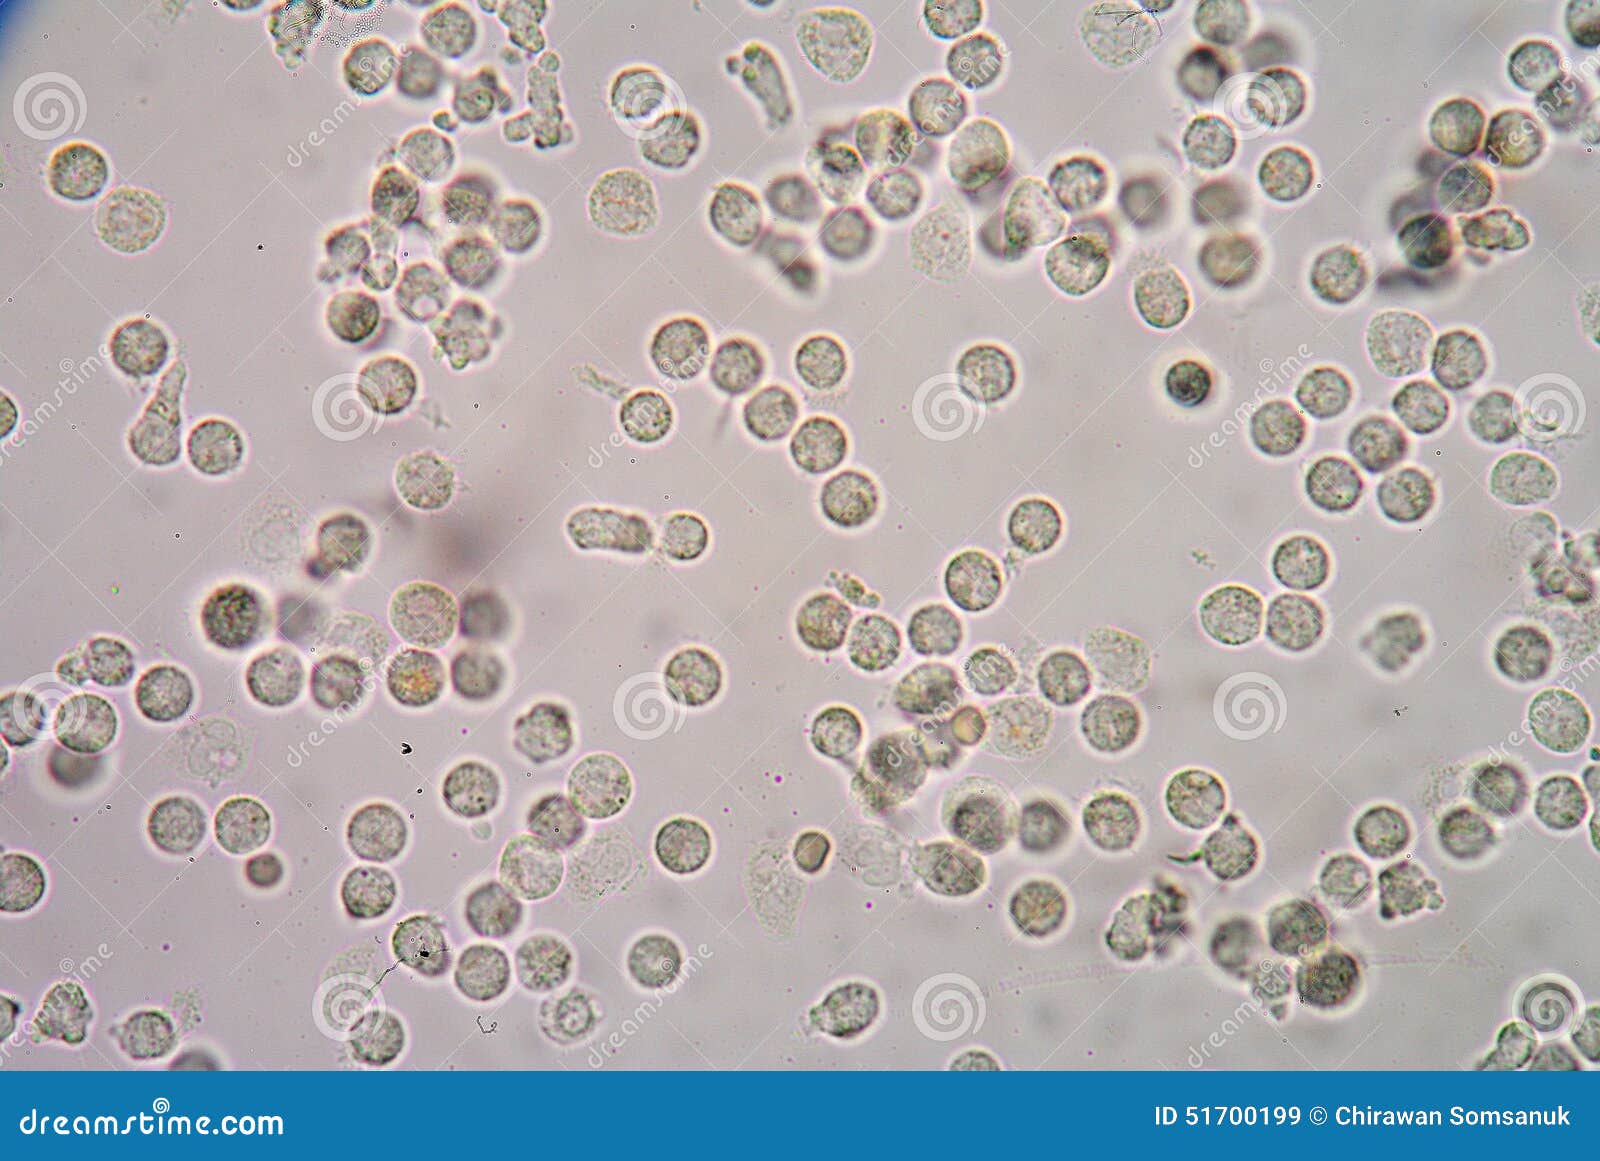 Эритроциты в 1 мл мочи. Лейкоциты в секрете простаты микроскопия. Лецитиновые зерна микроскопия. Лецитиновые зерна и лейкоциты в простате. Лейкоциты в моче под микроскопом.